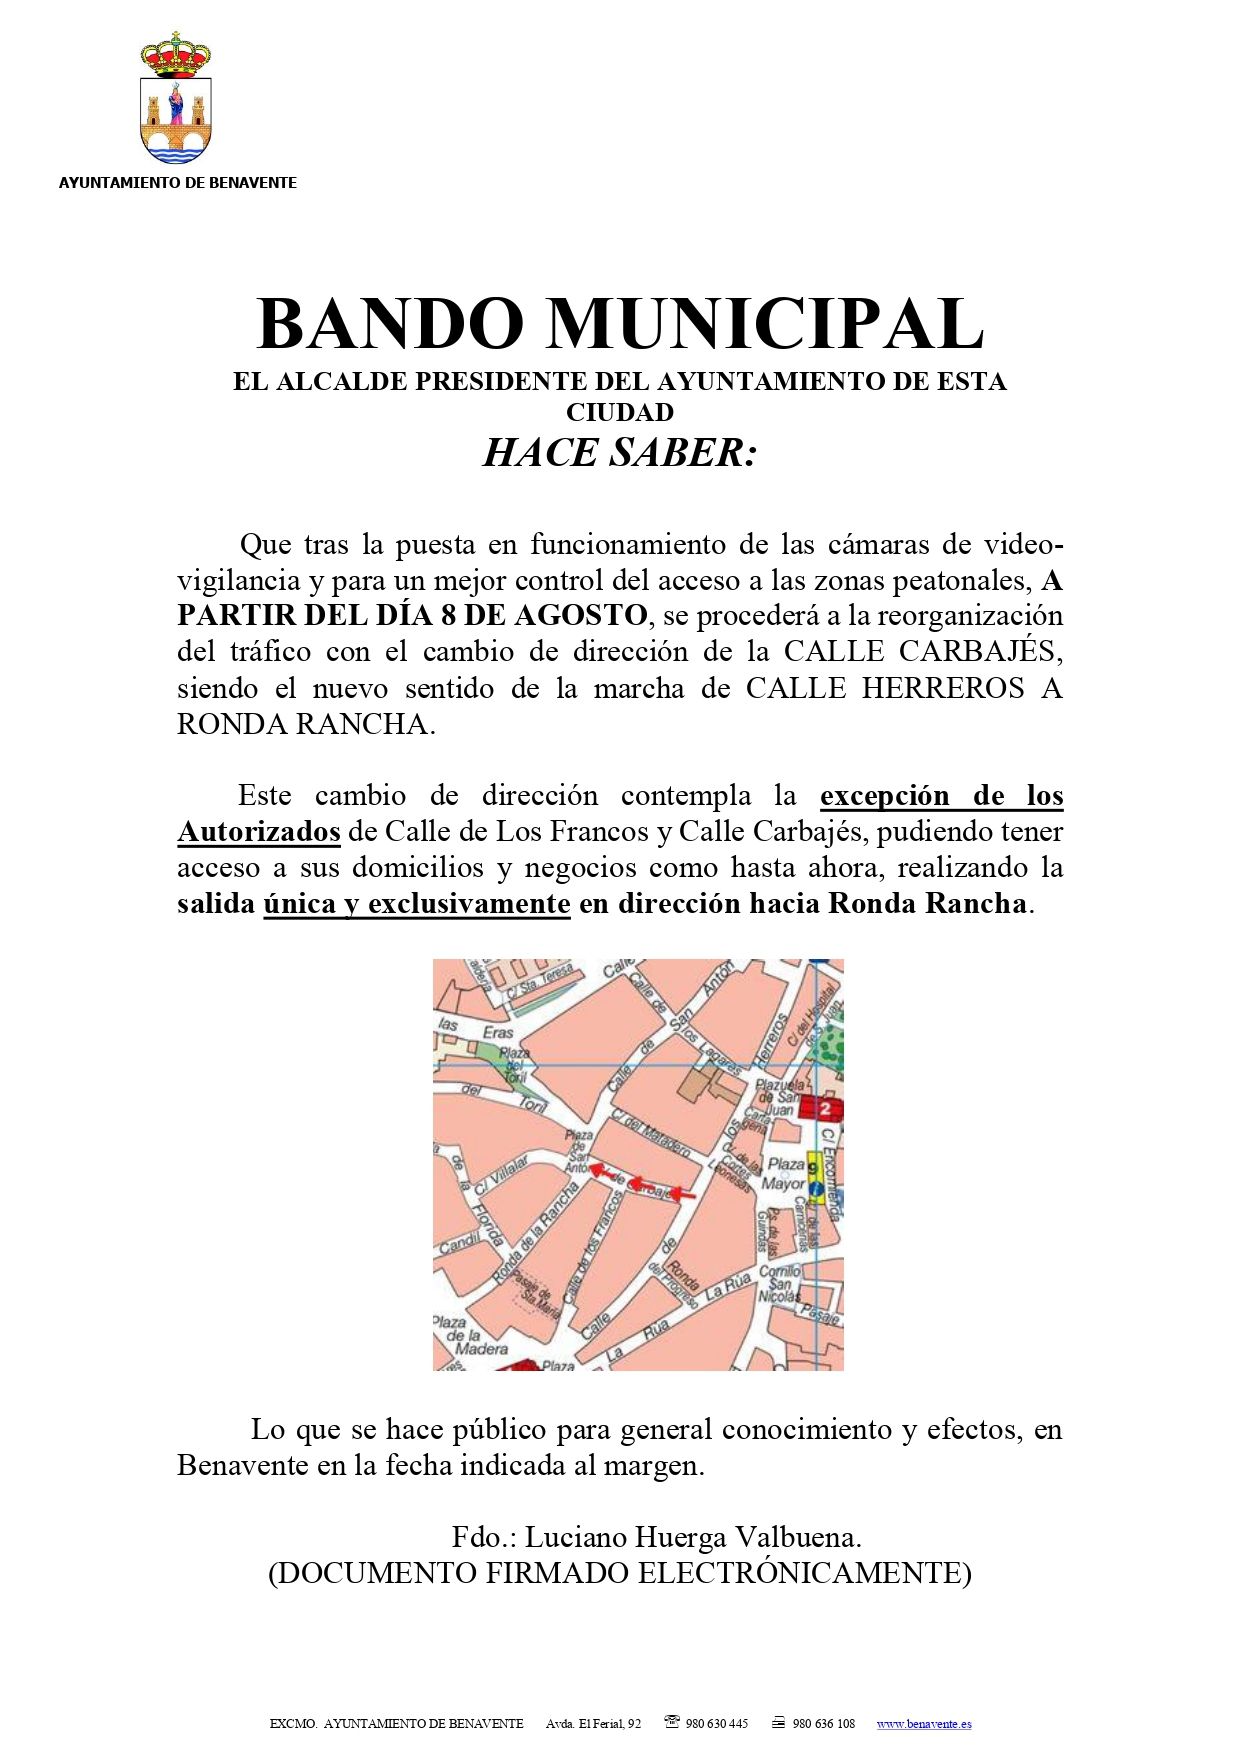 Bando municipal de Benavente